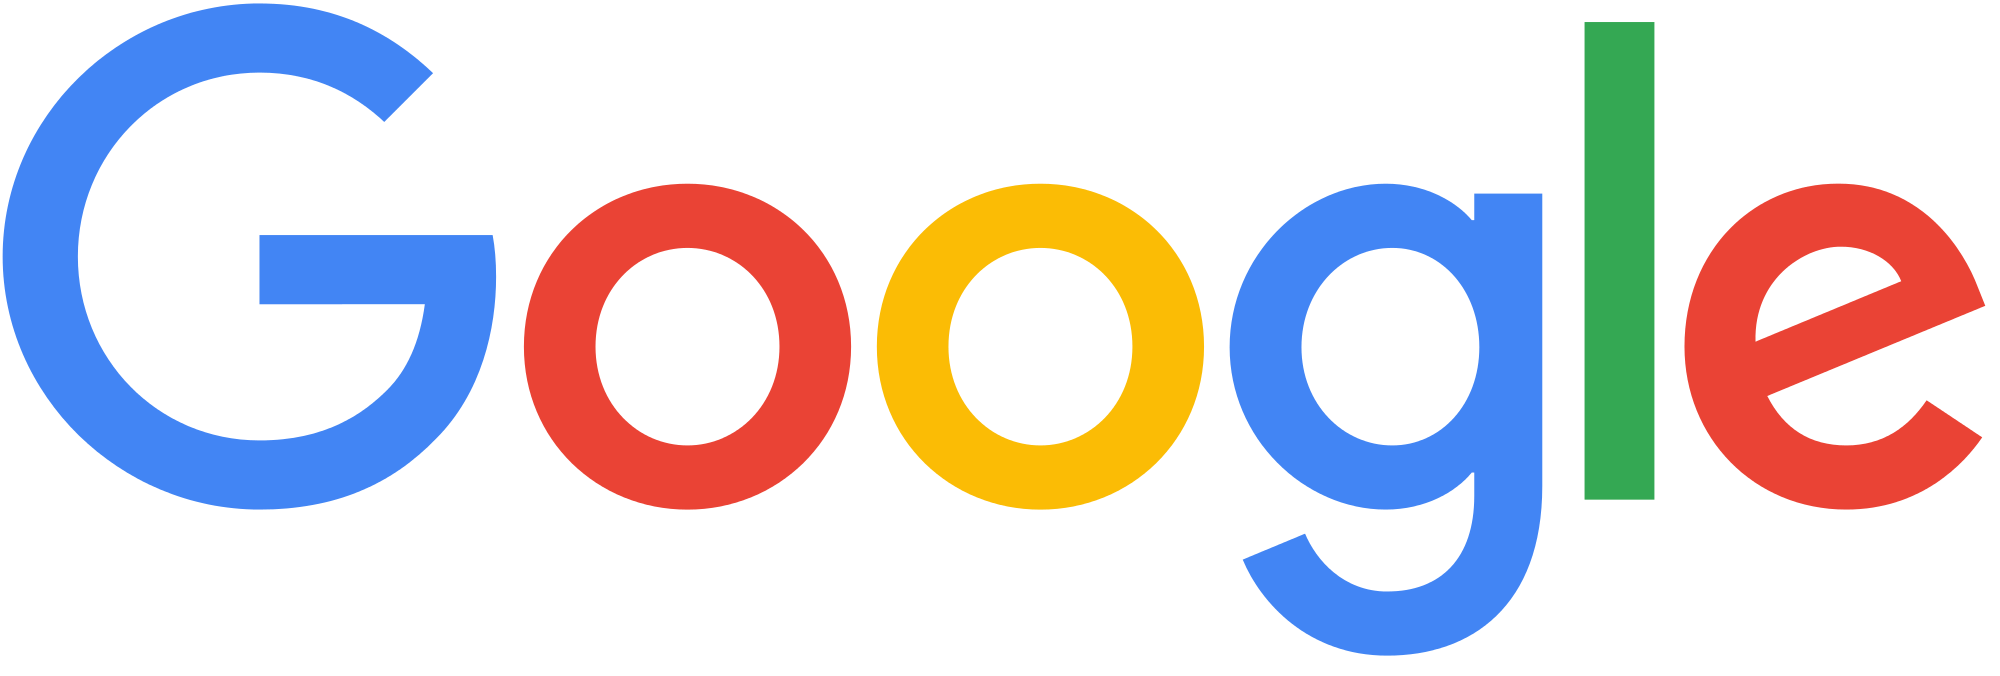 google company logo